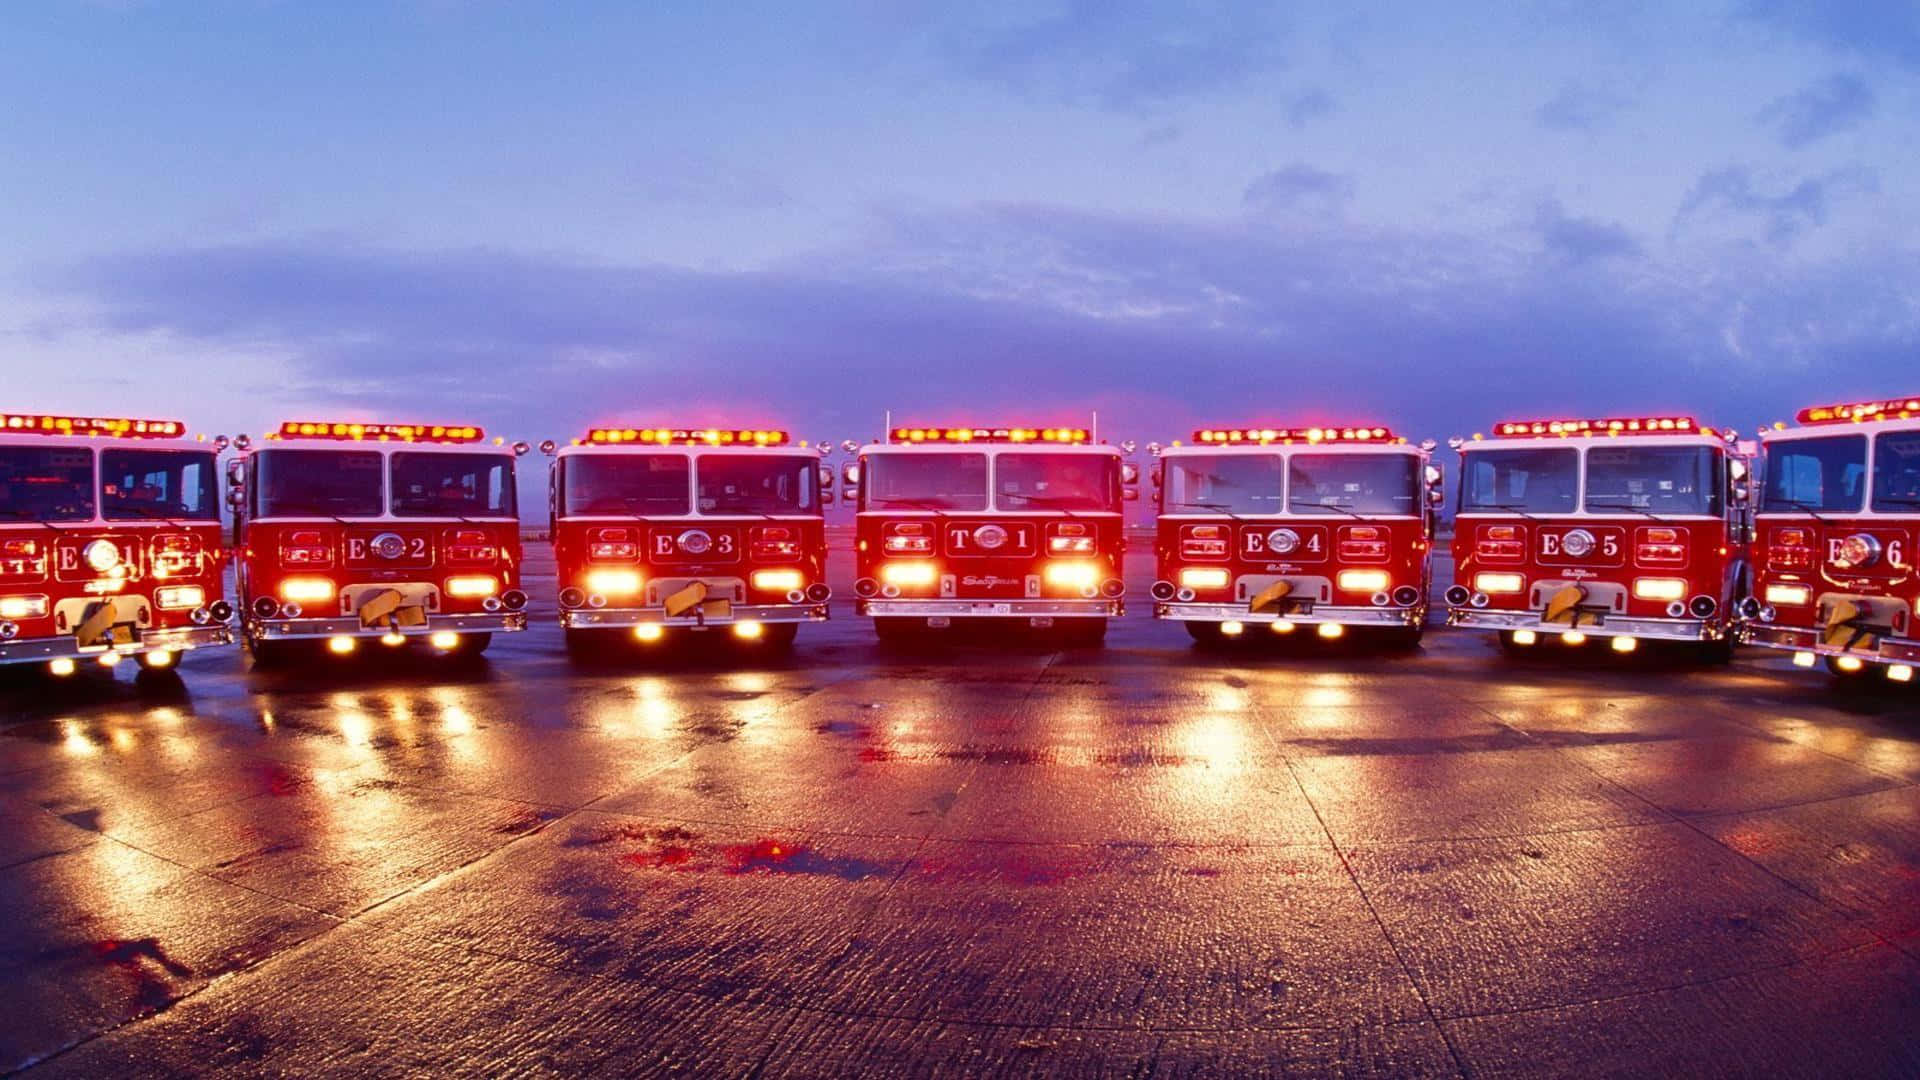 Coraggiosipompieri Si Precipitano In Azione Su Un Potente Camion Antincendio.